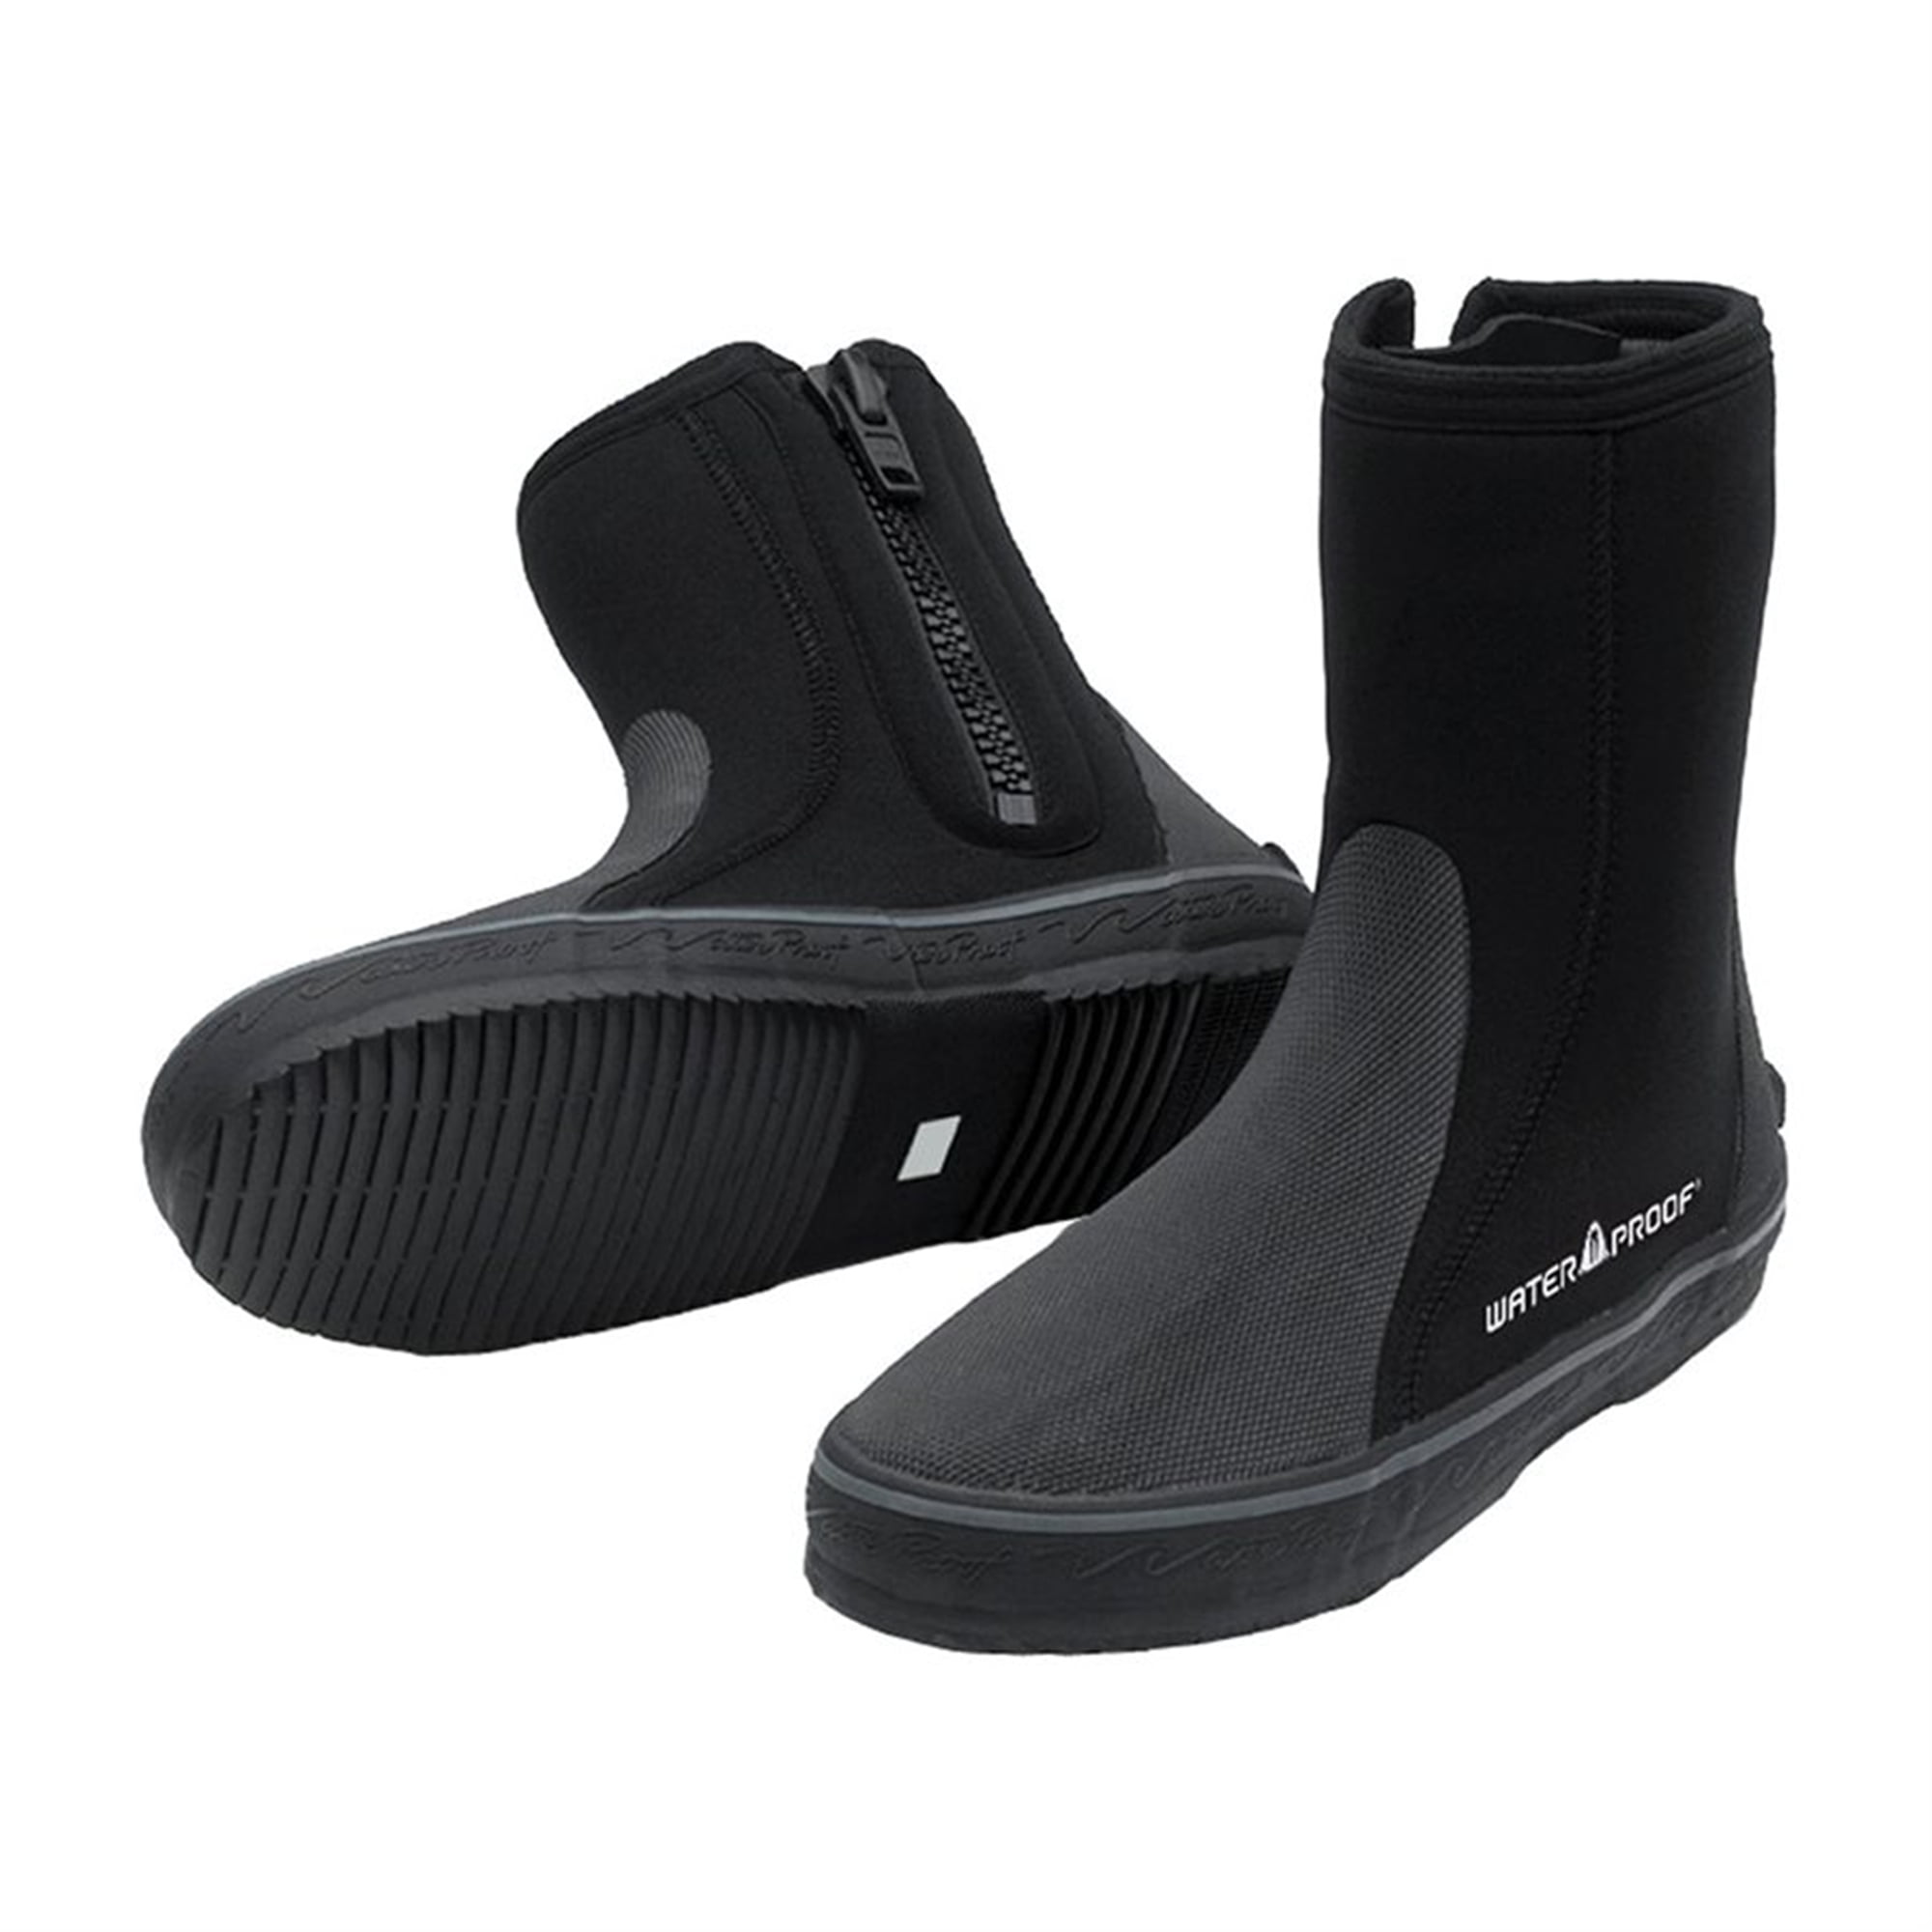 waterproof high top boots